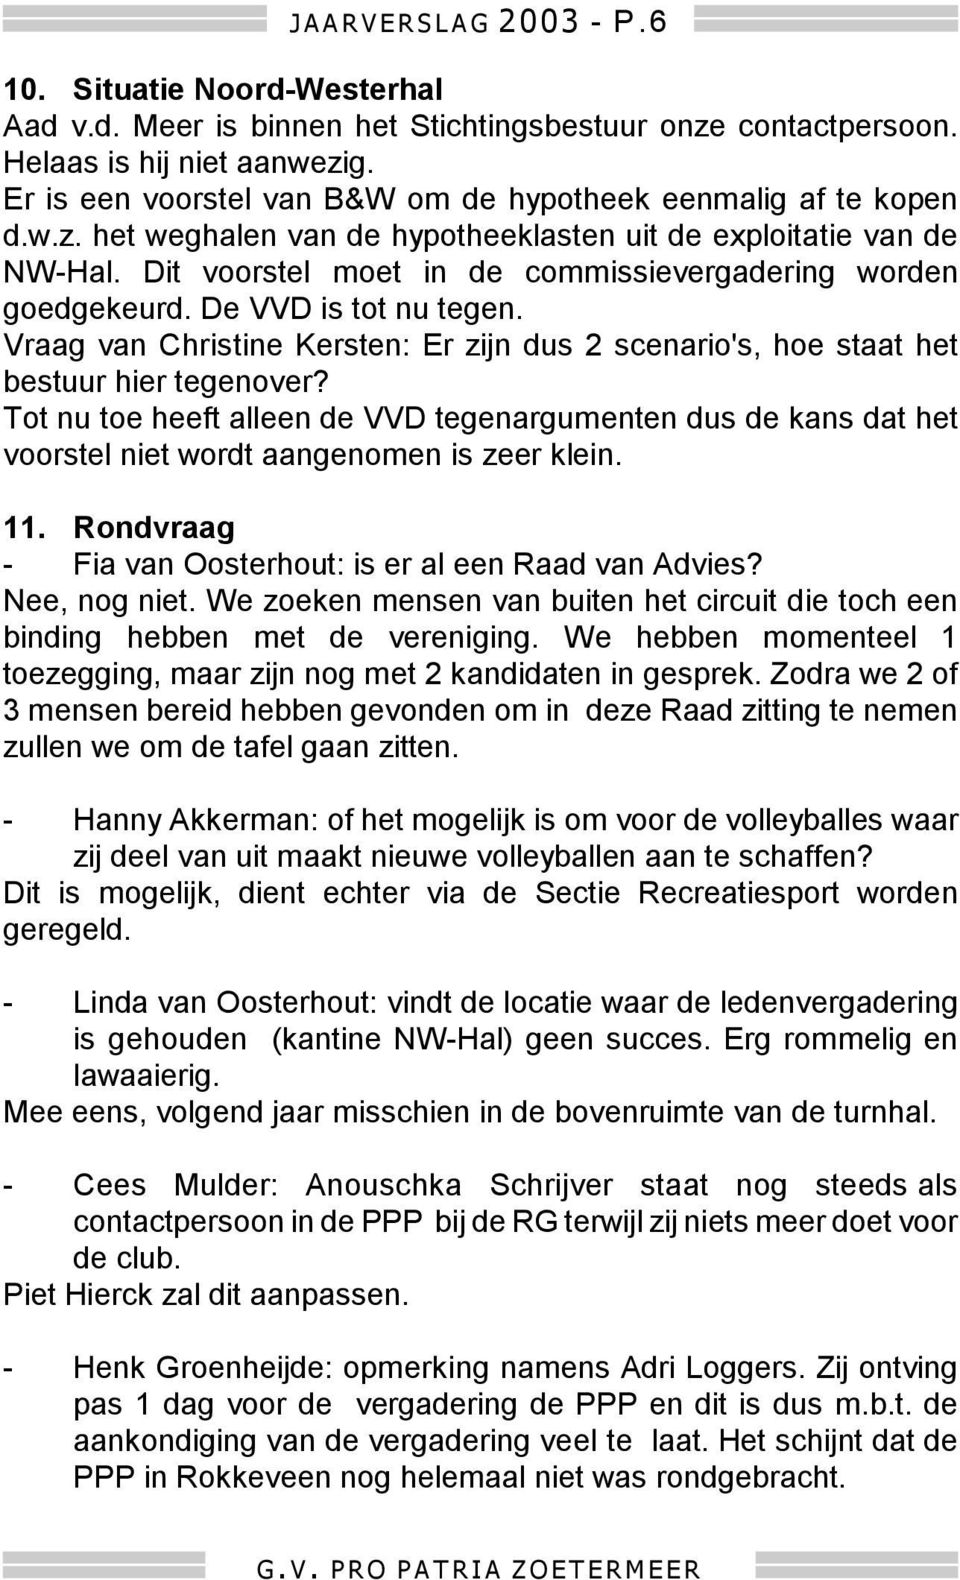 Dit voorstel moet in de commissievergadering worden goedgekeurd. De VVD is tot nu tegen. Vraag van Christine Kersten: Er zijn dus 2 scenario's, hoe staat het bestuur hier tegenover?